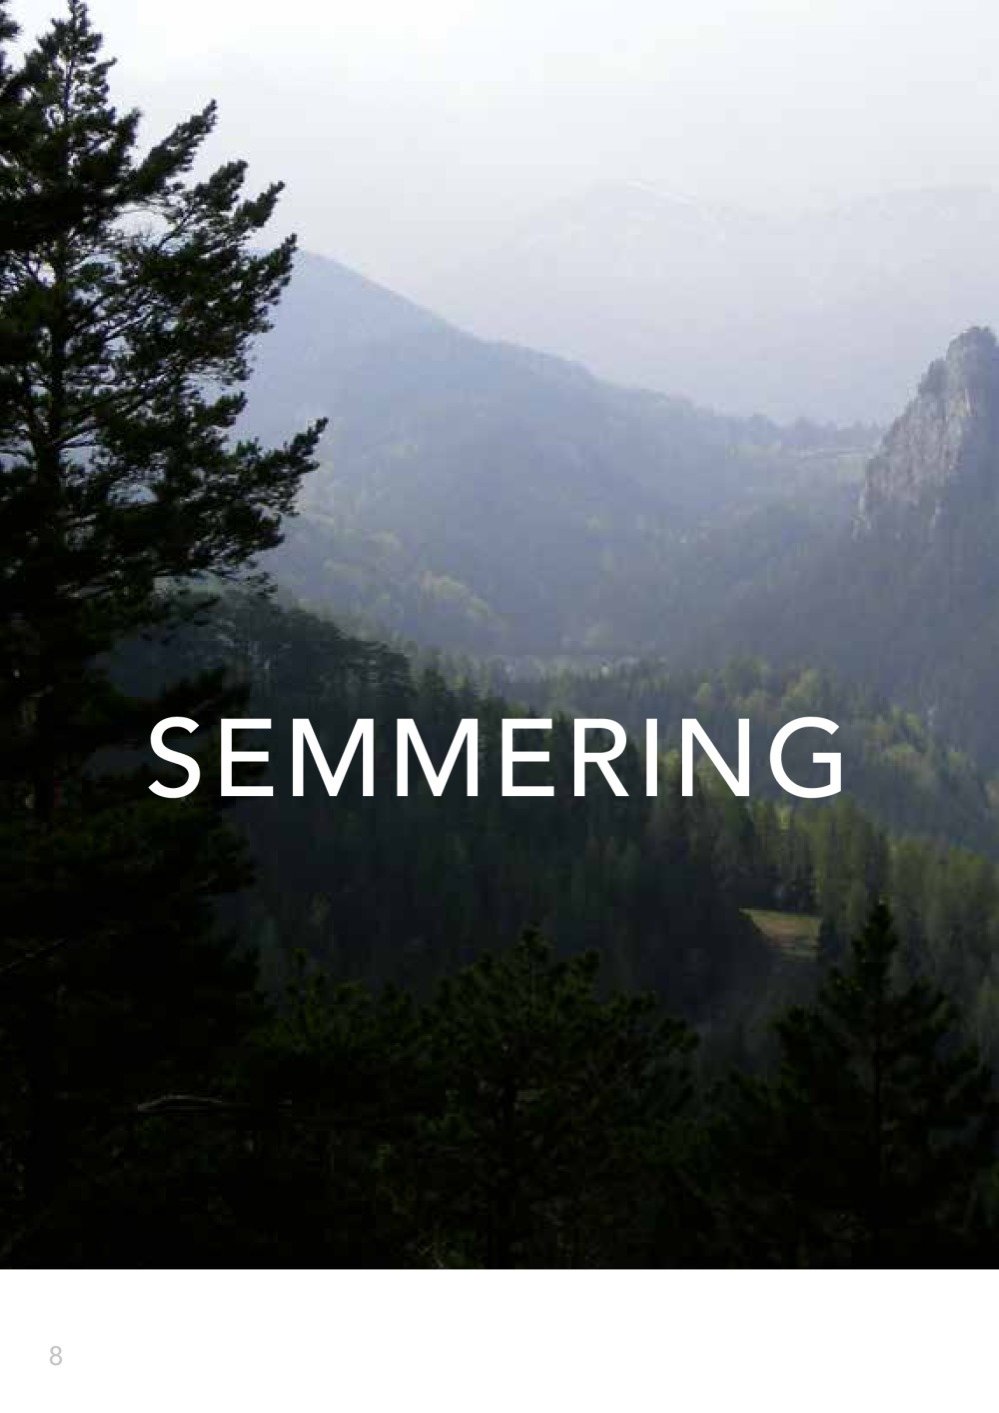 9783222136542 - Semmering, Rax und Schneeberg